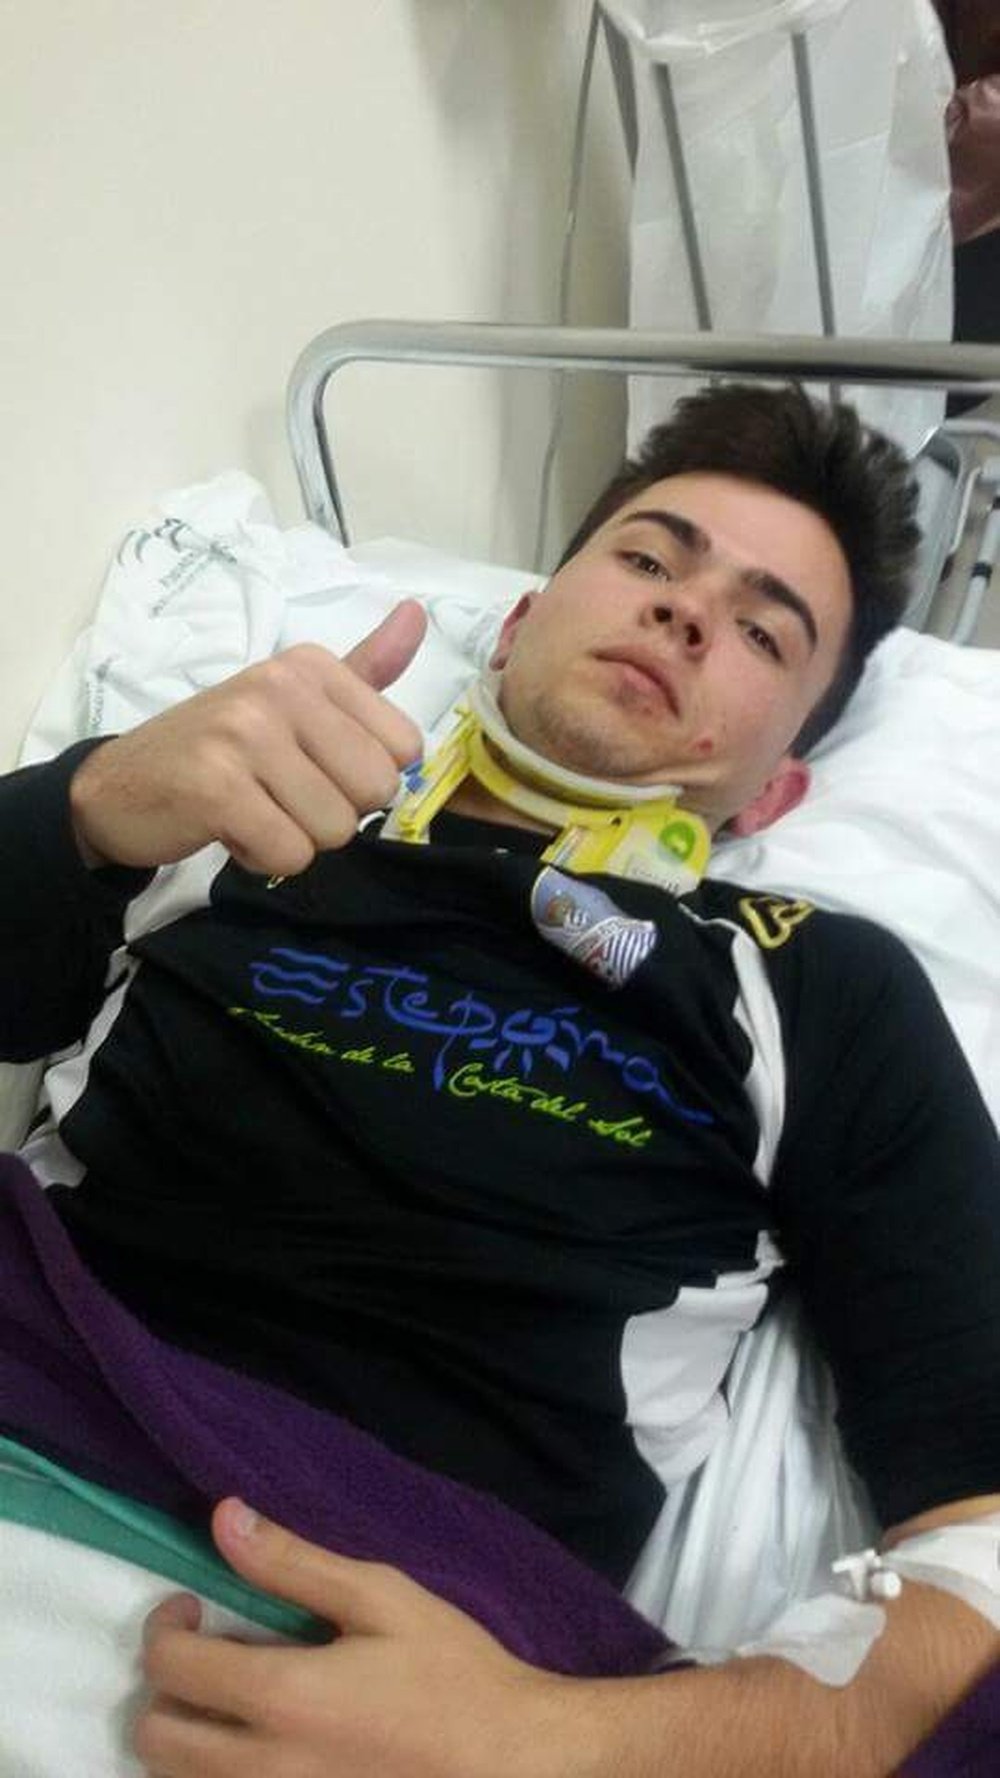 El portero del Estepona Diego Rivas, en el hospital tras sufrir un fuerte golpe en la cabeza en el partido contra el filial del Linares. Twitter/DiegoGilRivas